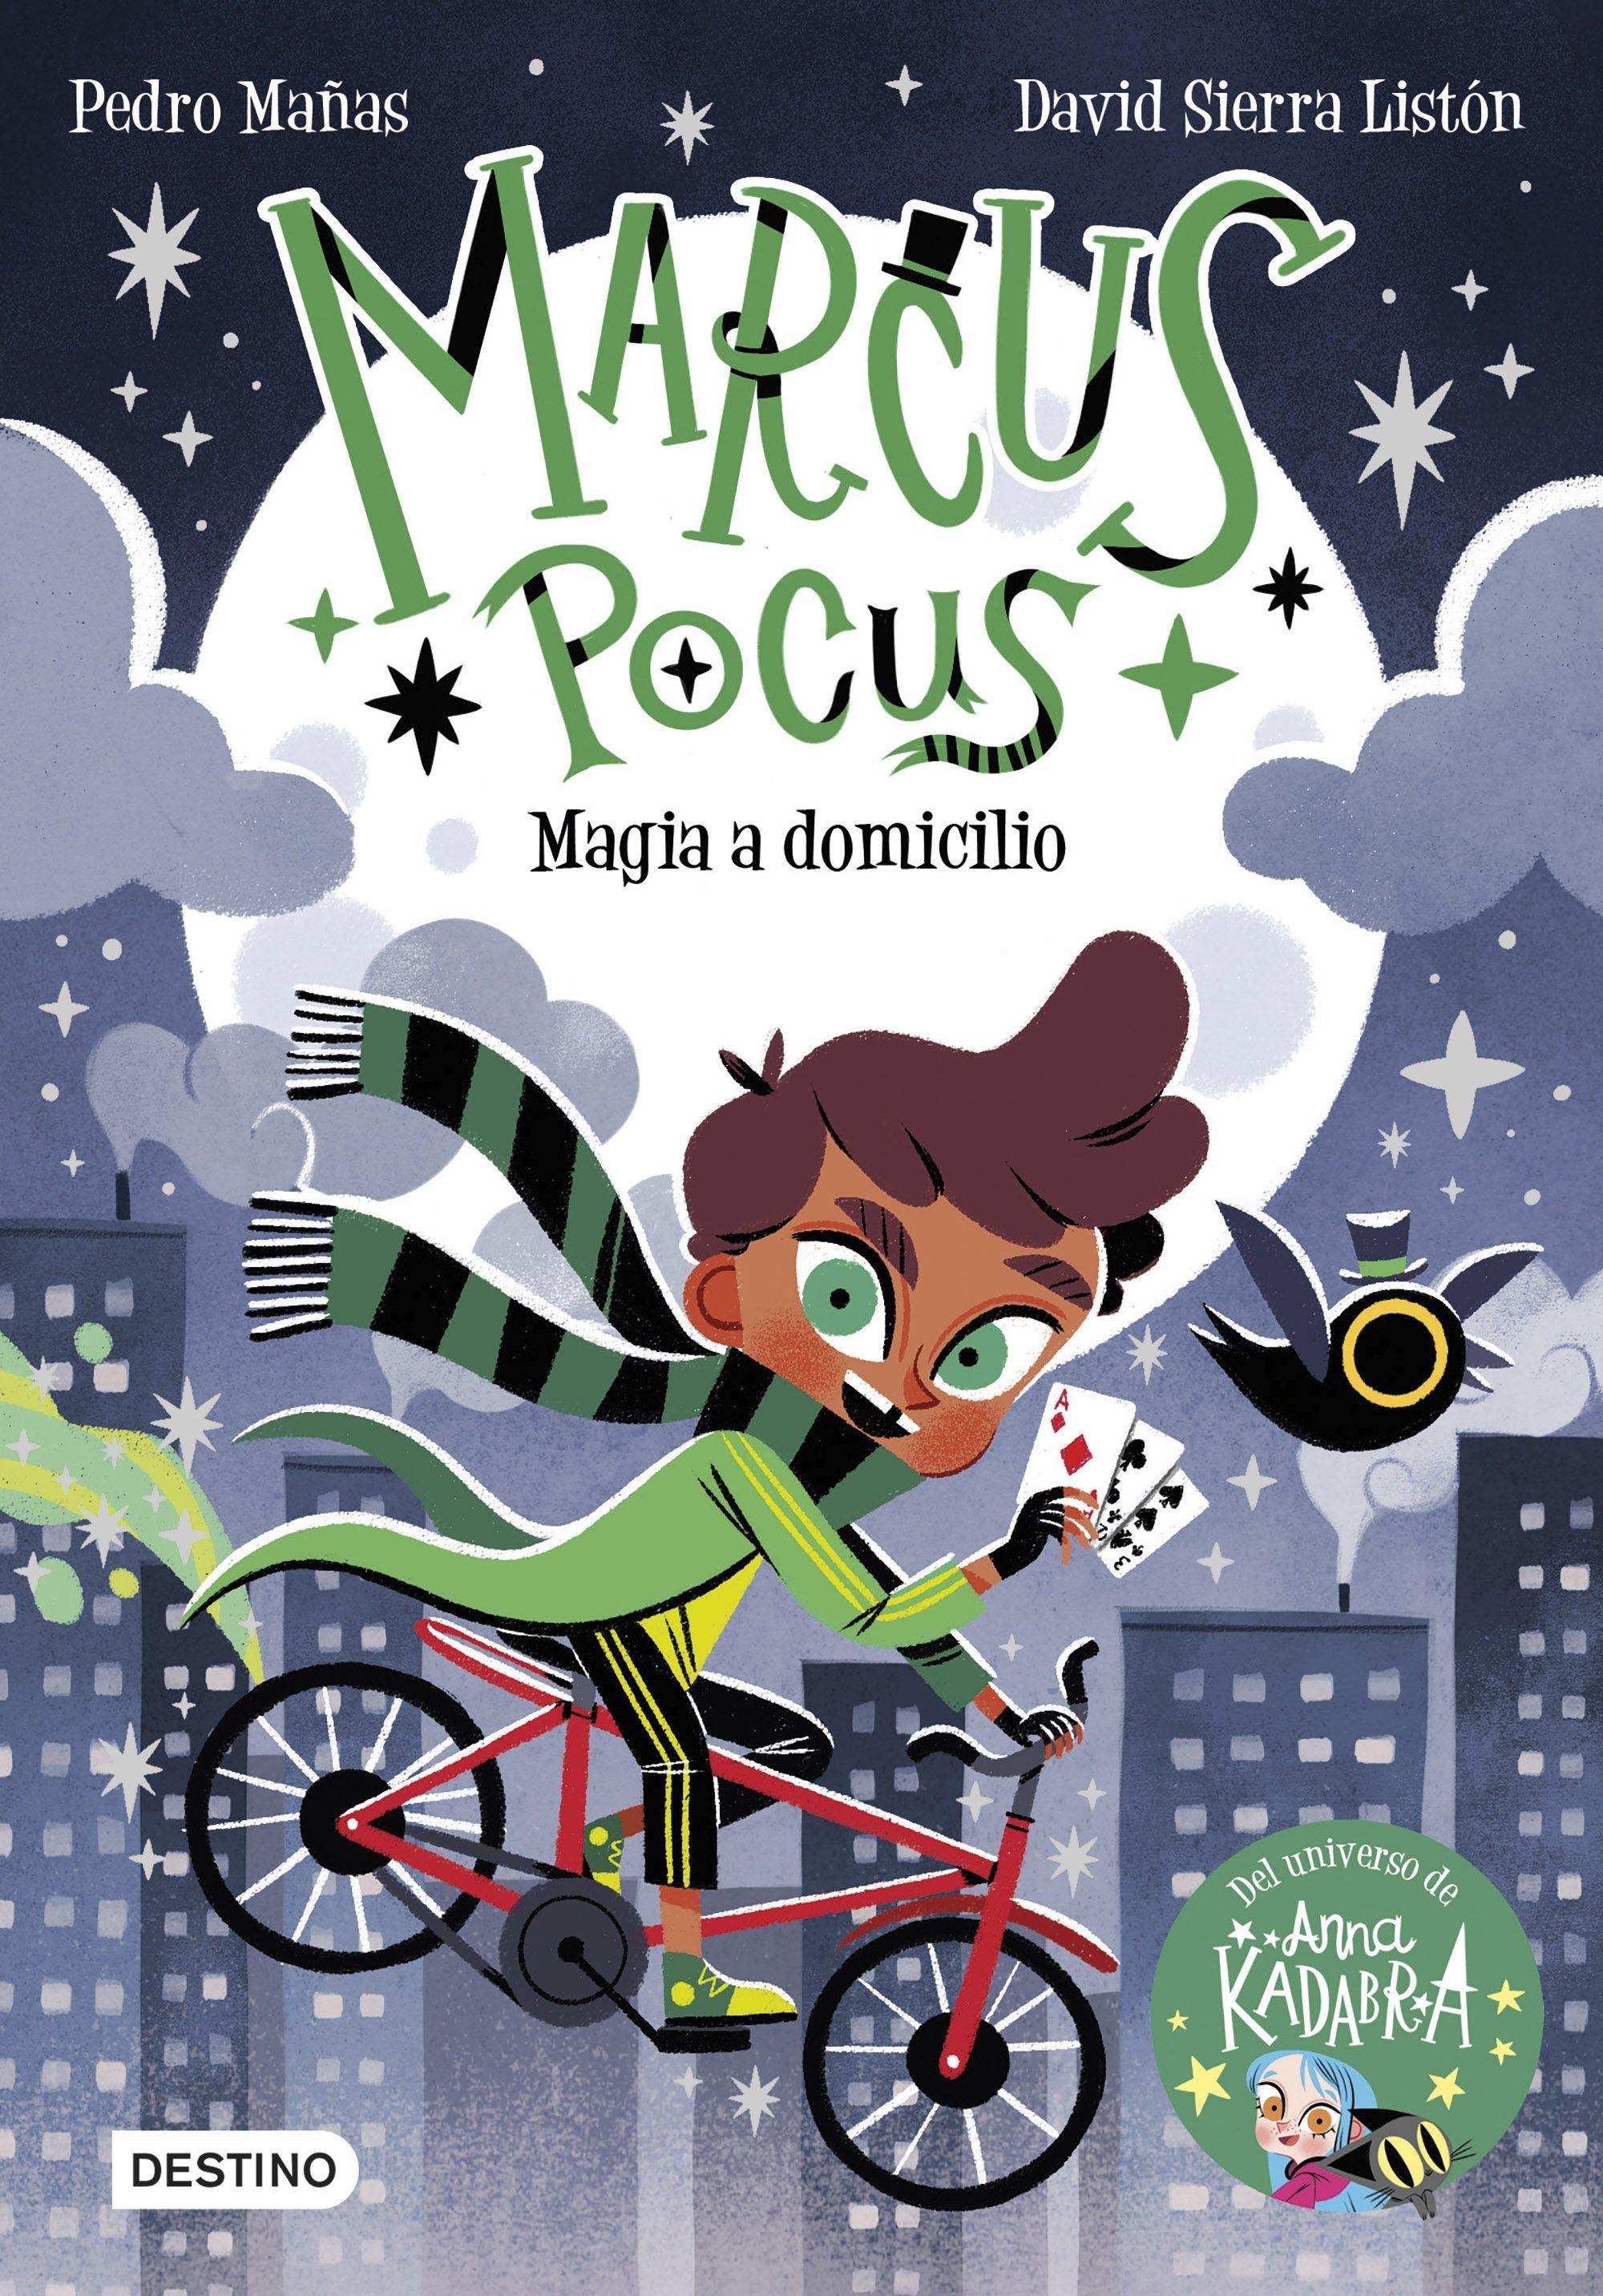 Marcus Pocus 1  "Magia a Domicilio". 